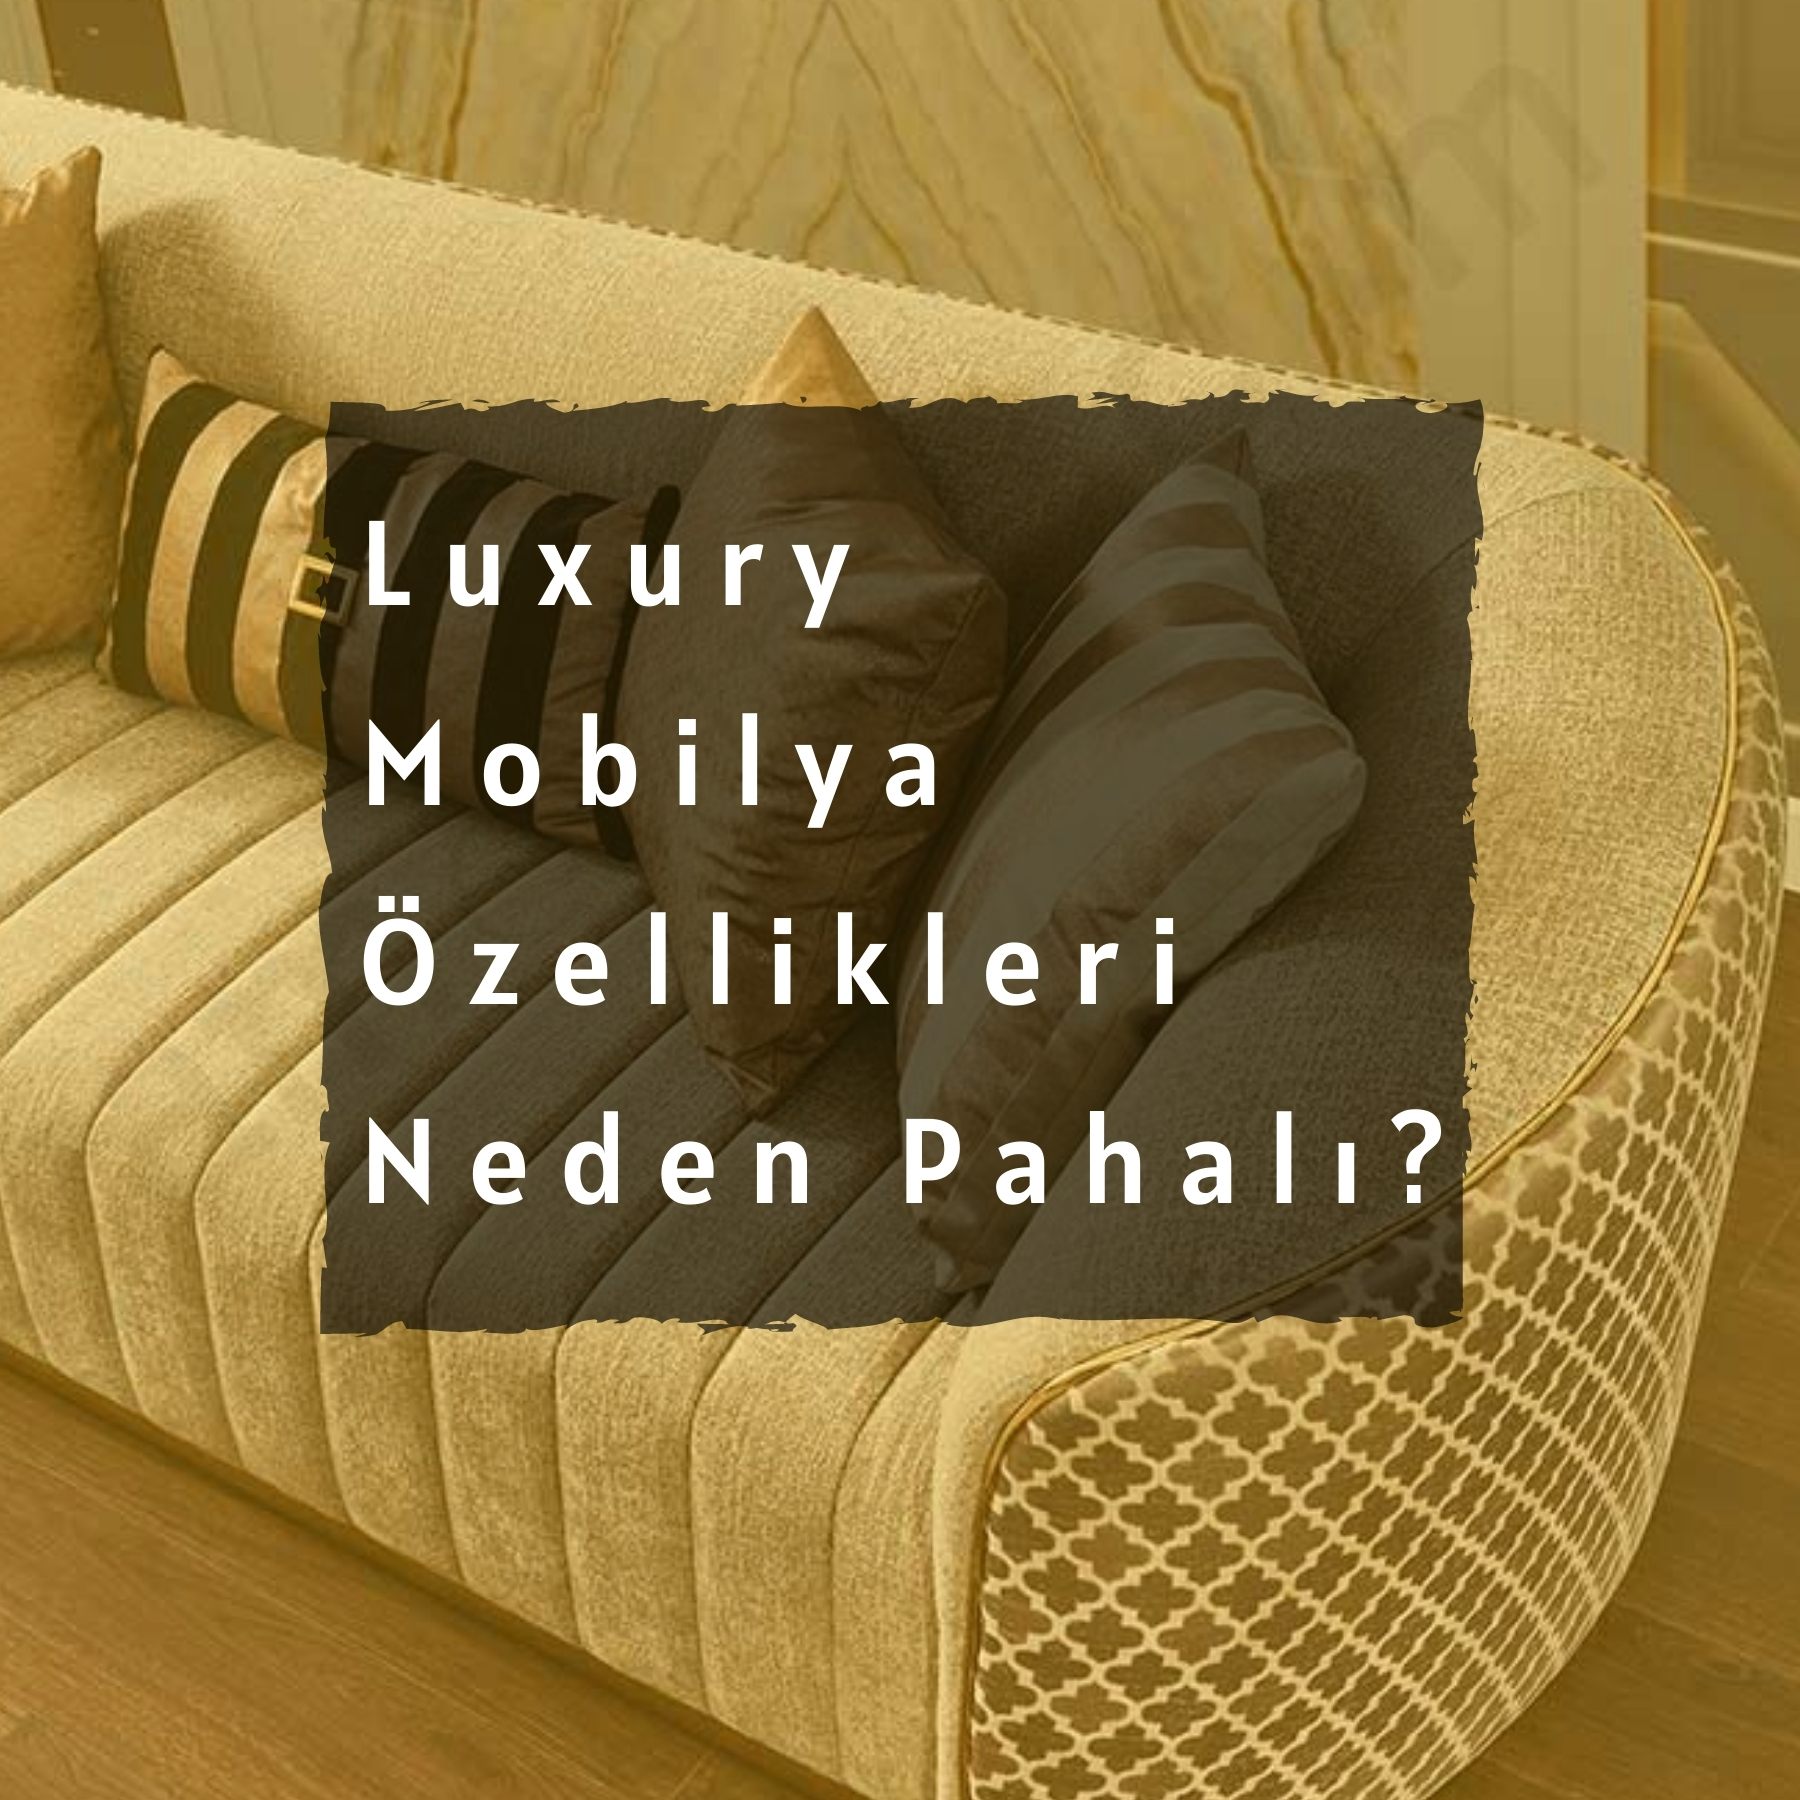 Luxury Mobilya Özellikleri Neler? Neden Pahalı? 